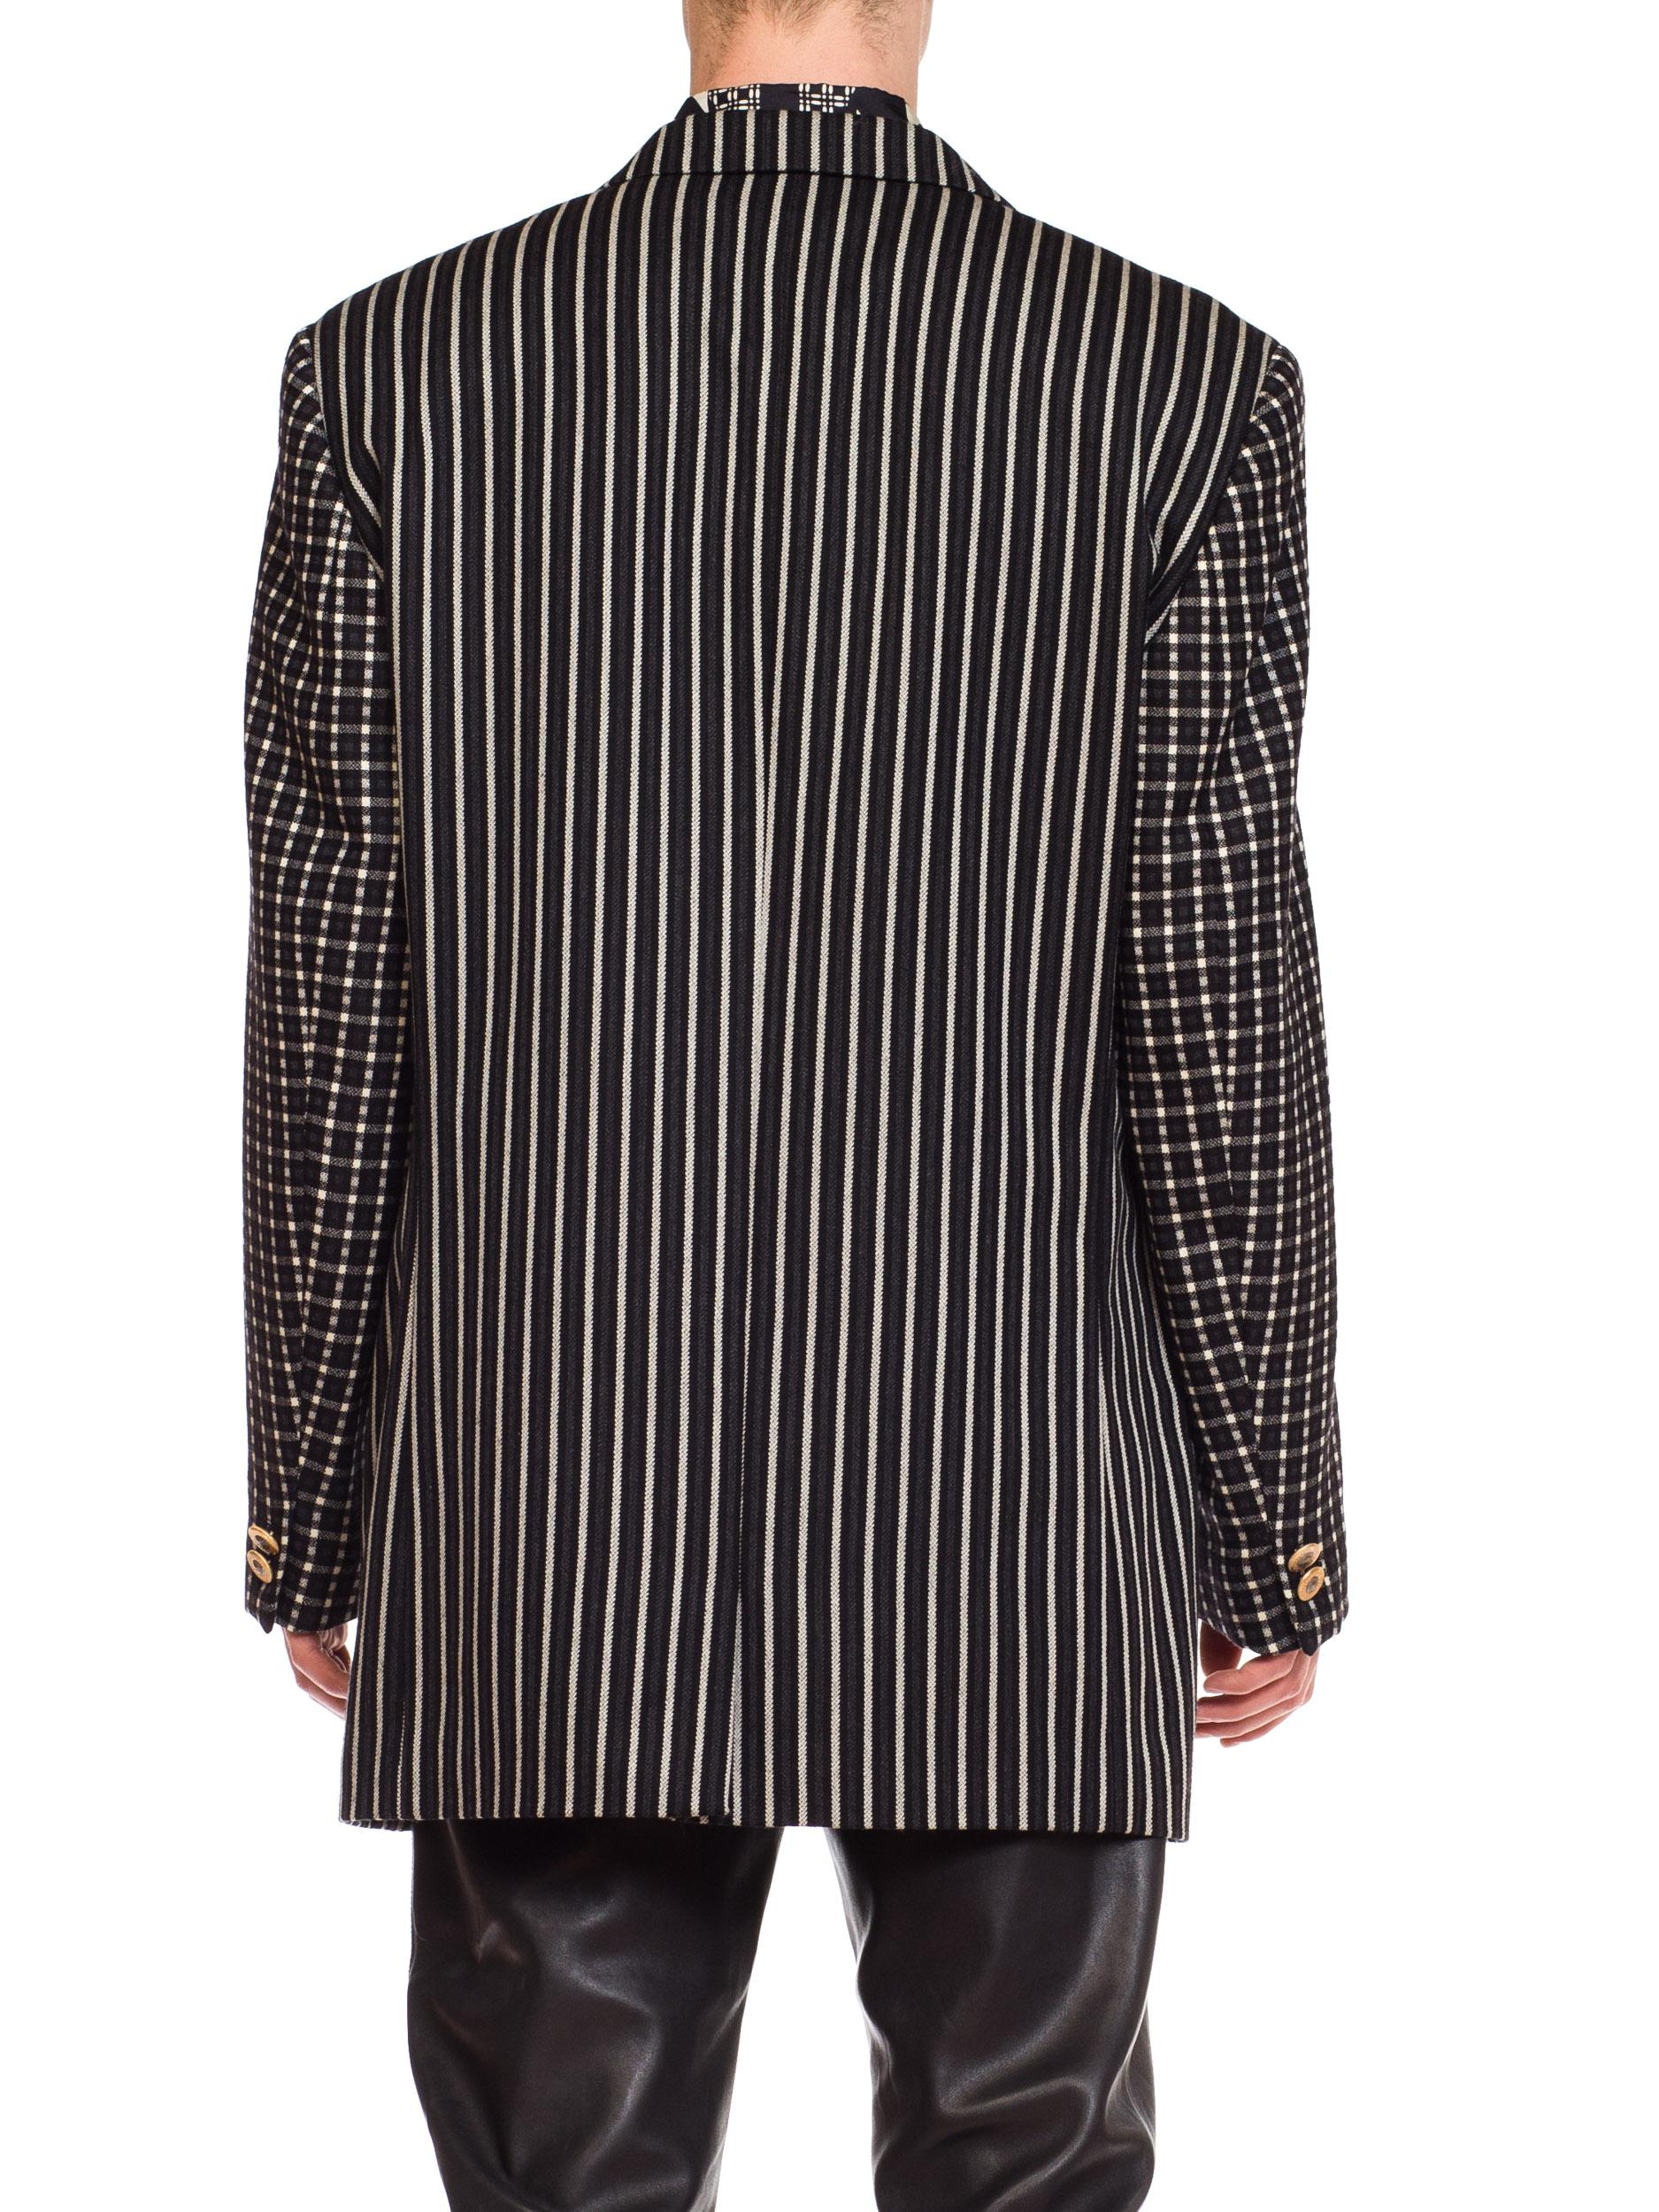 1990S GIANNI VERSACE Black, White & Grey Wool Check Plaid Striped Weiner Werksta For Sale 1